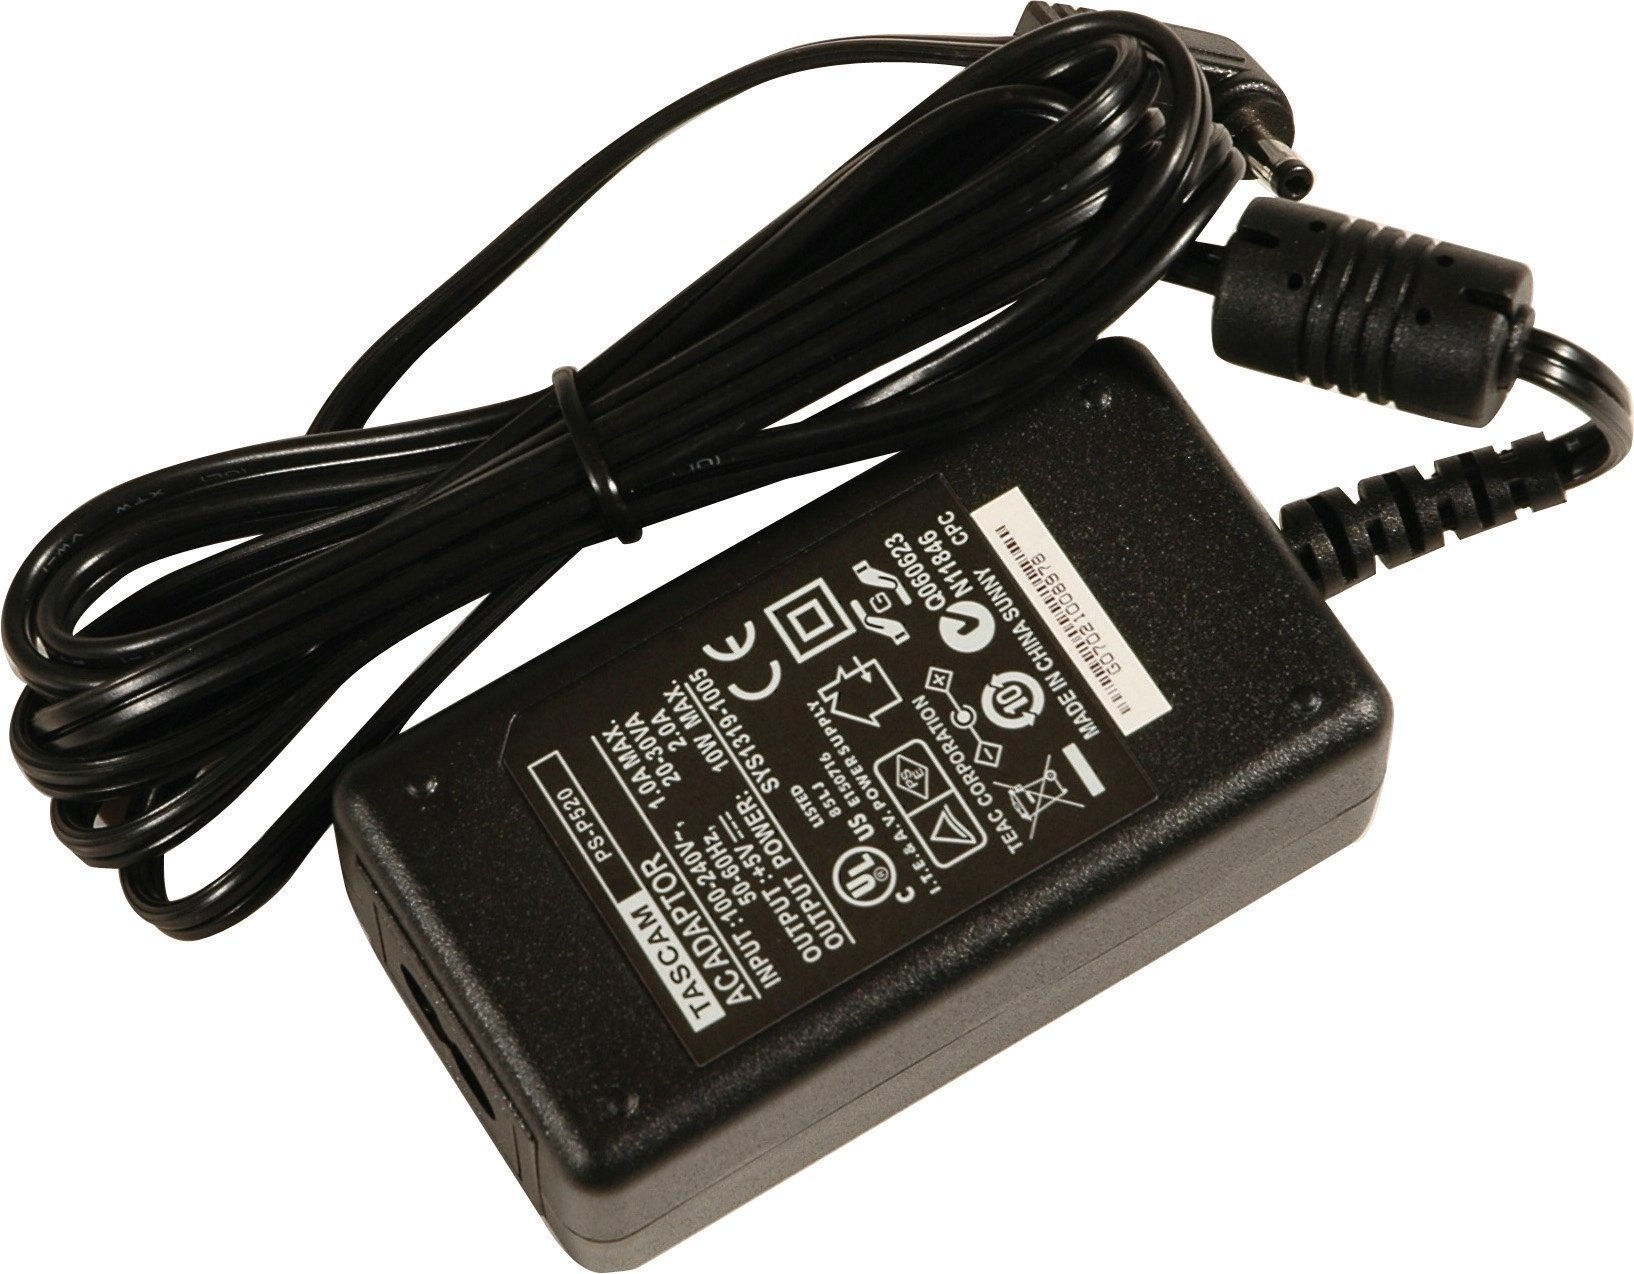 Adattatore per registratori digitali Tascam PS-P520